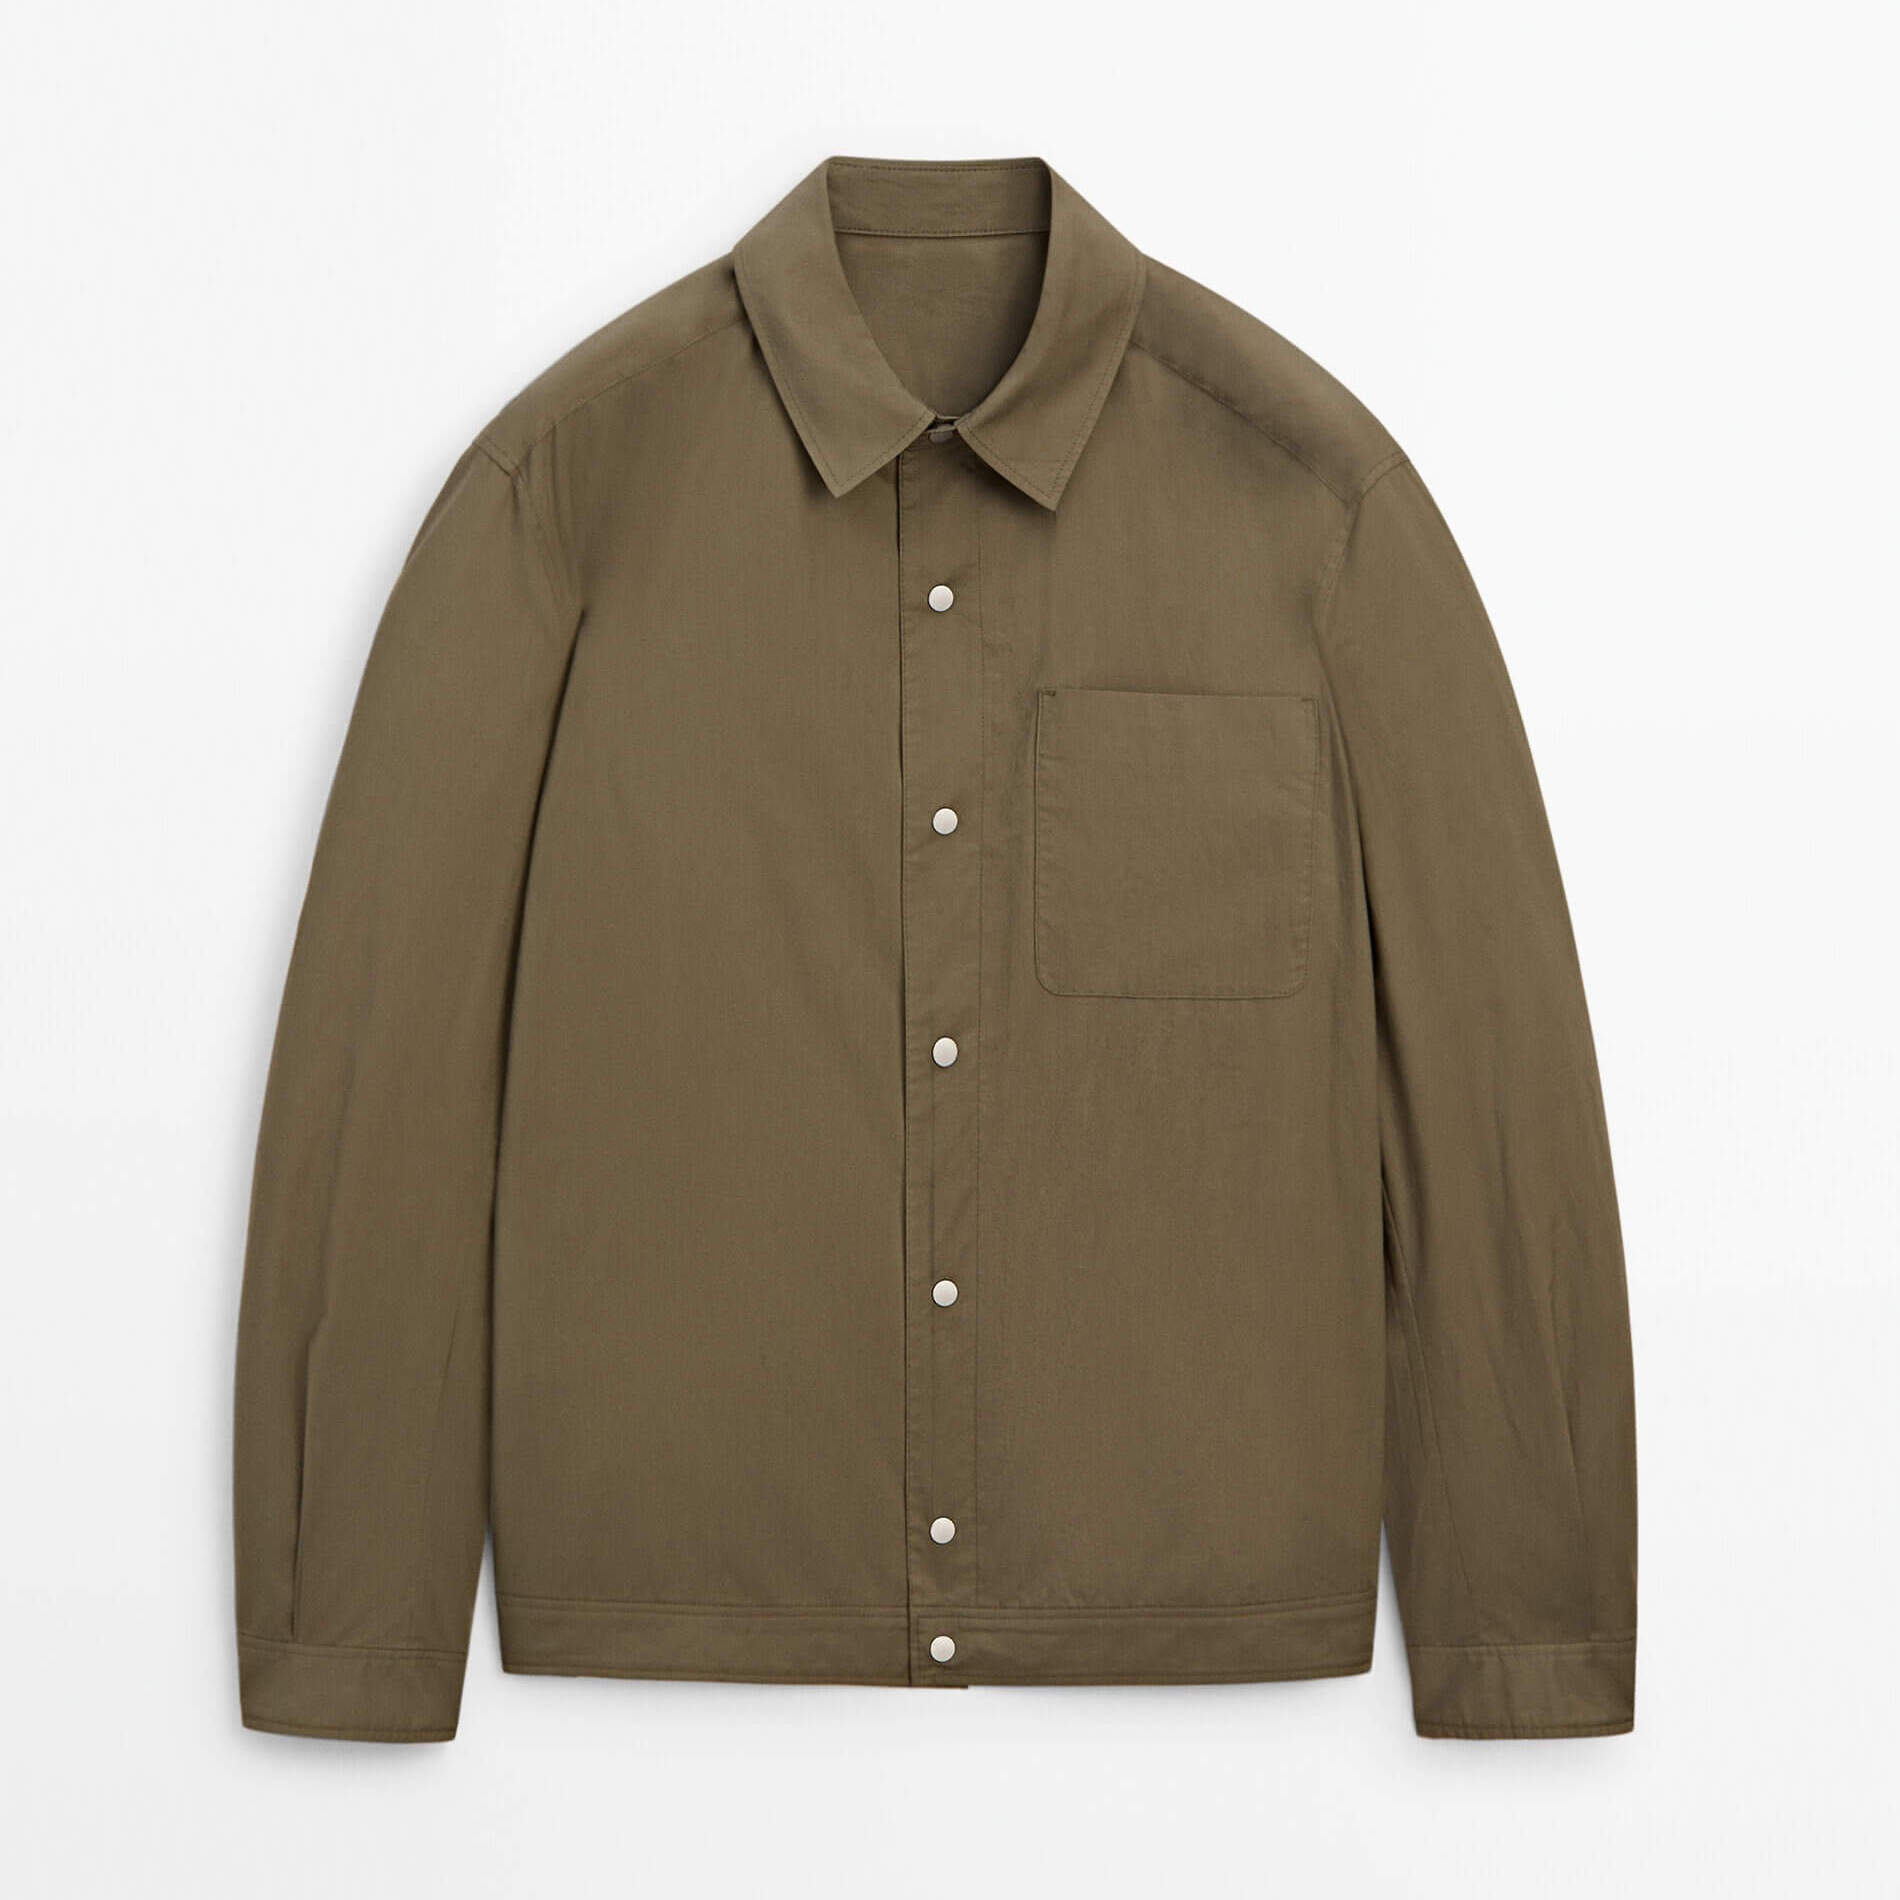 Куртка-рубашка Massimo Dutti Cotton With Chest Pocket, хаки куртка рубашка massimo dutti 100% cotton with pockets темный хаки